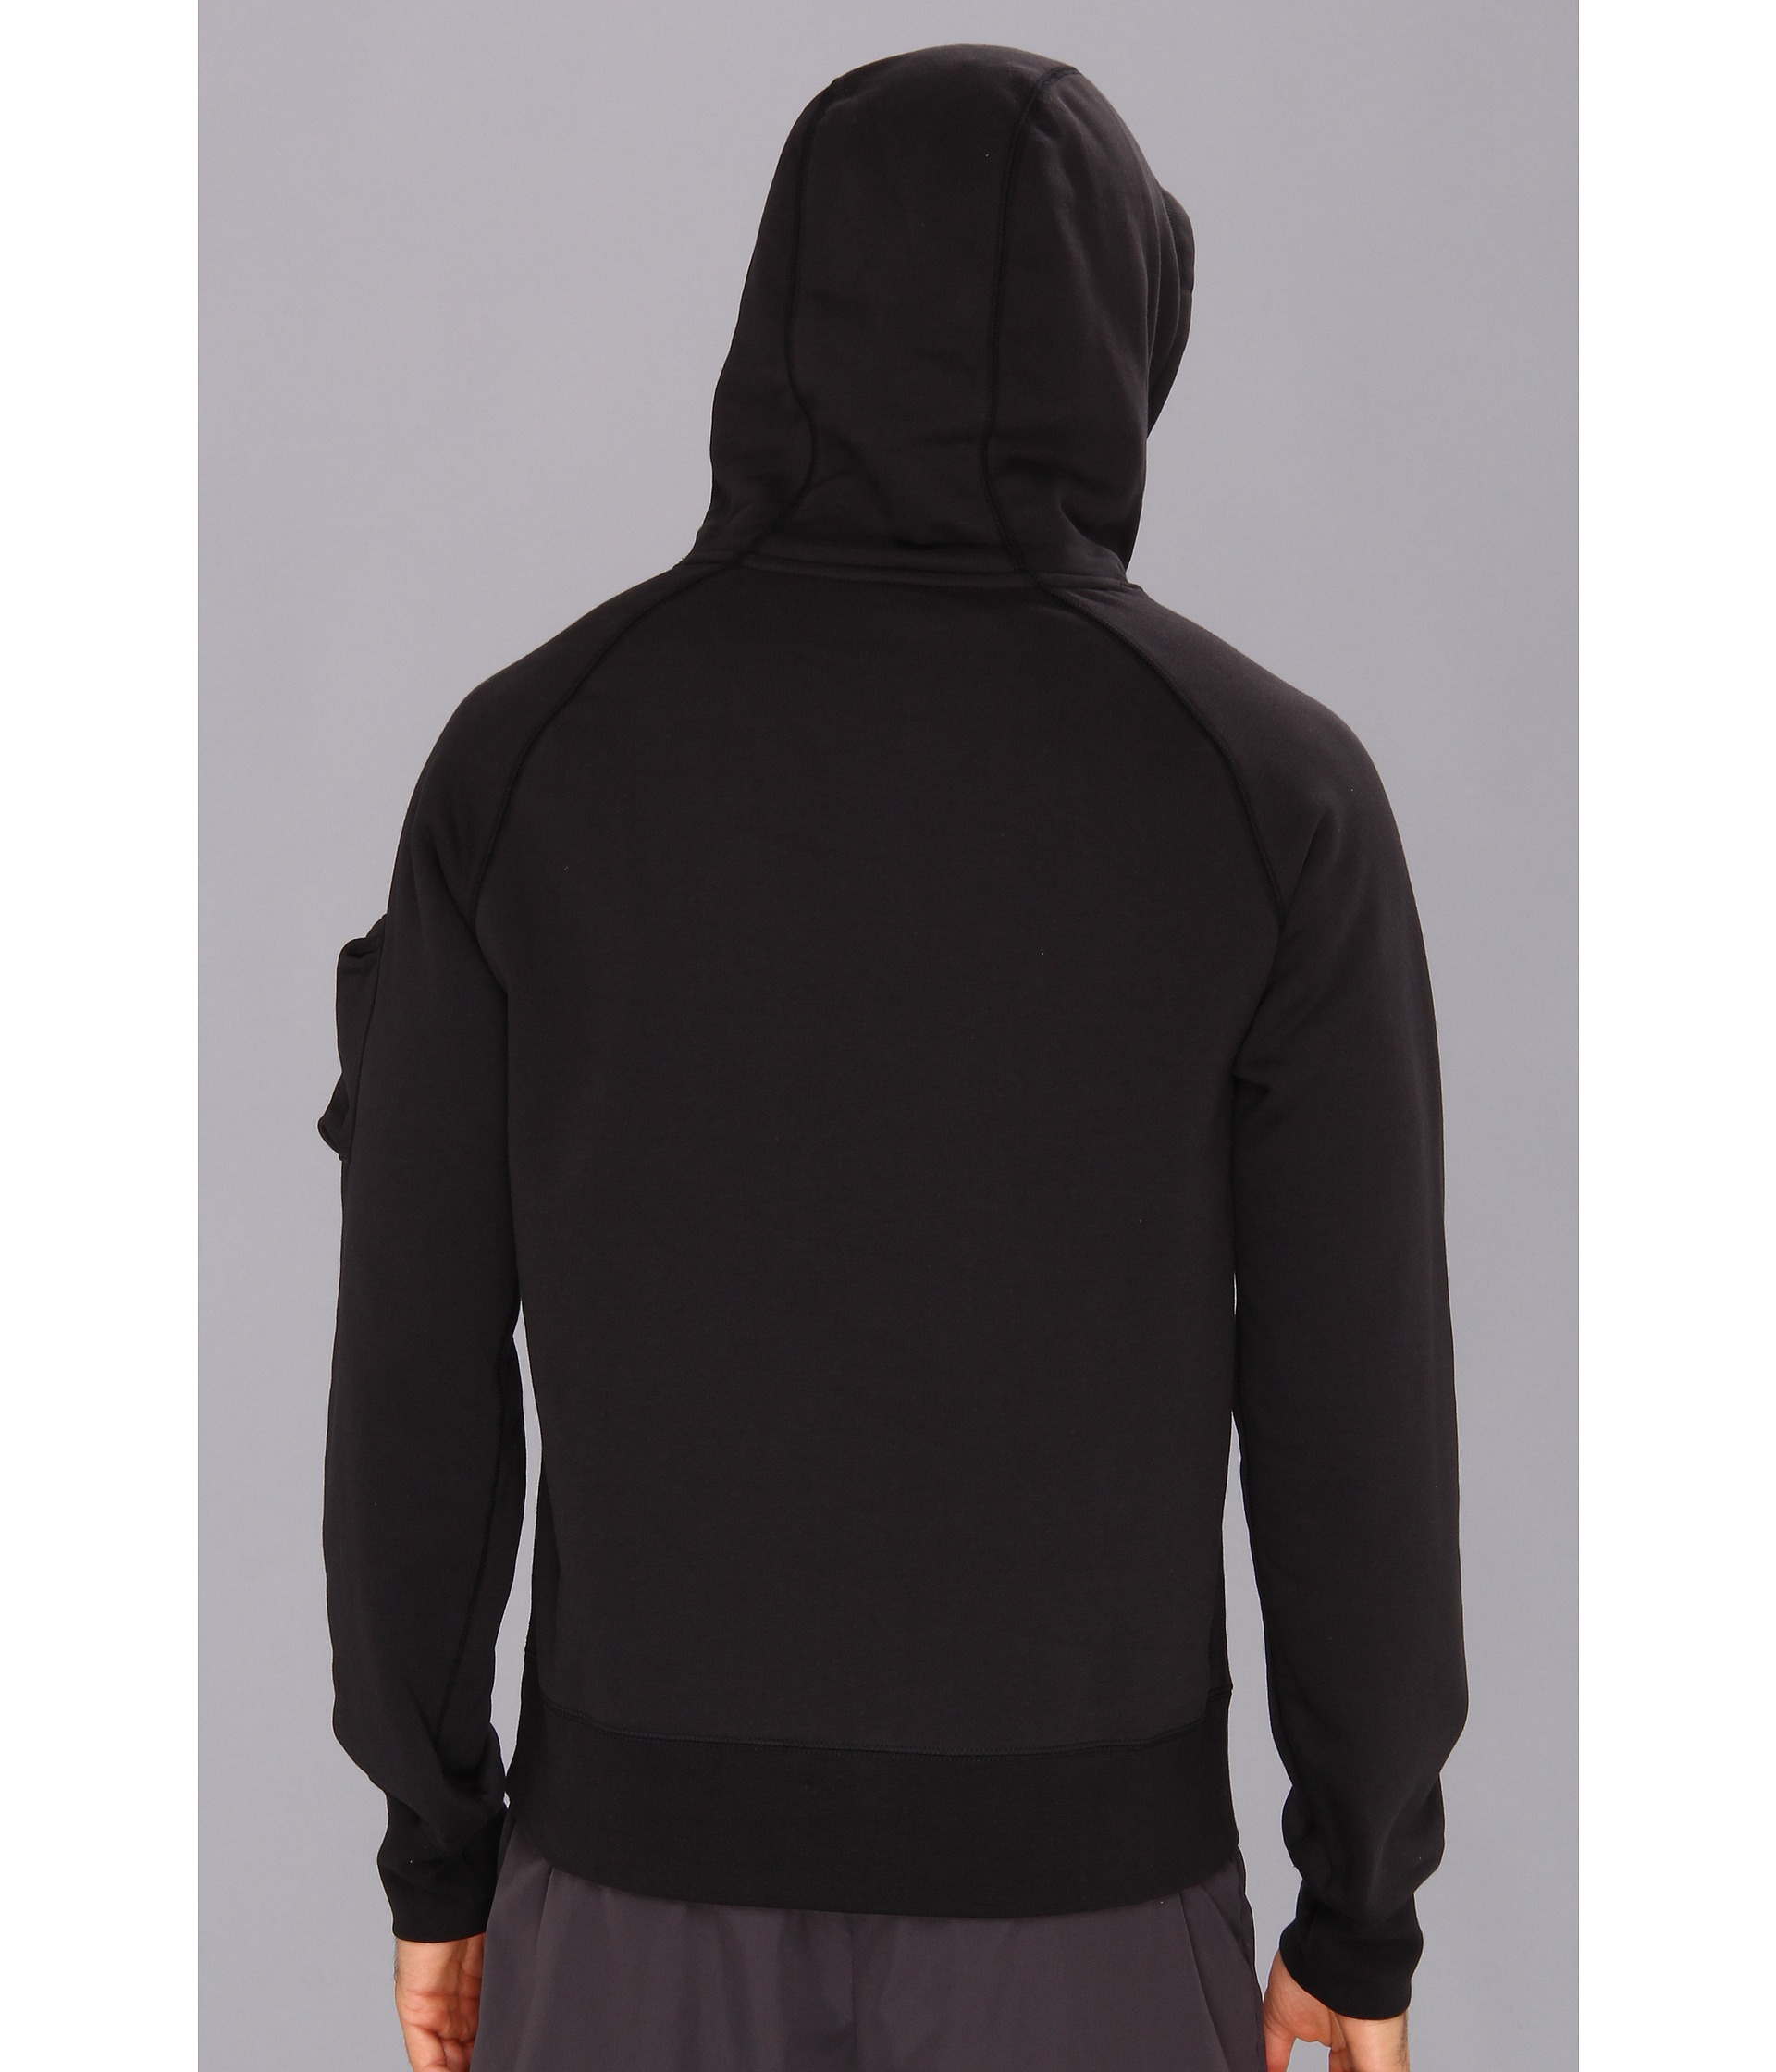 Nike Aw77 Fleece Pullover Hoodie in Black/White (Black) for Men - Lyst